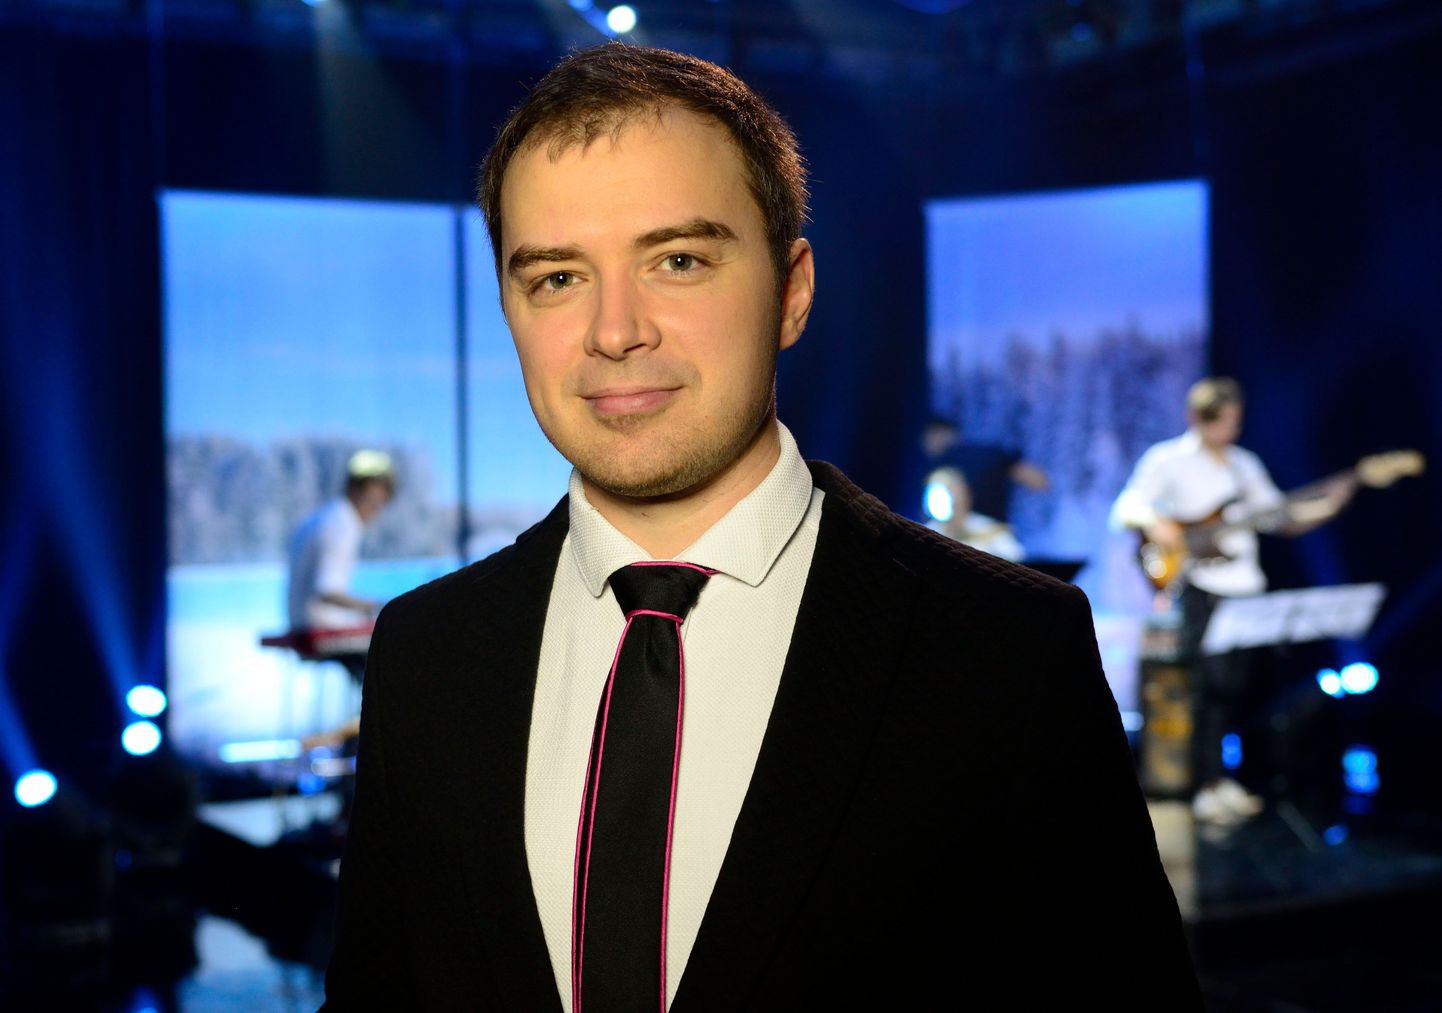 Eesti suurima äriideede konkursi telesaate uus juht on ETV ekraanilt tuntud Kristo Elias